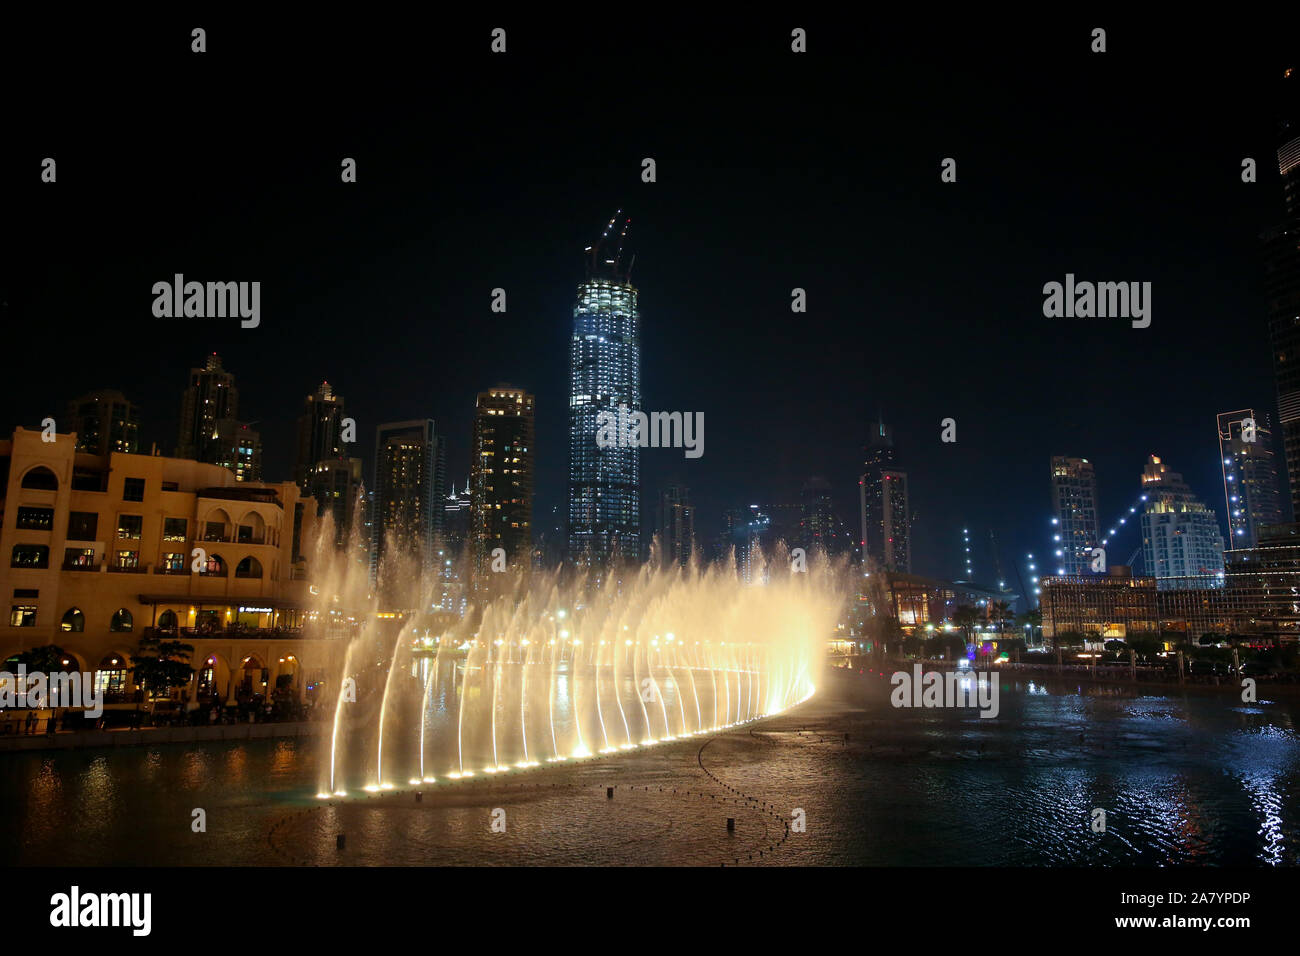 Wasser & Licht zeigen in der Innenstadt in der Stadt bei Nacht mit all den skyscrappers illluminated und im See, Dubai, Vereinigte Arabische Emirate. Stockfoto